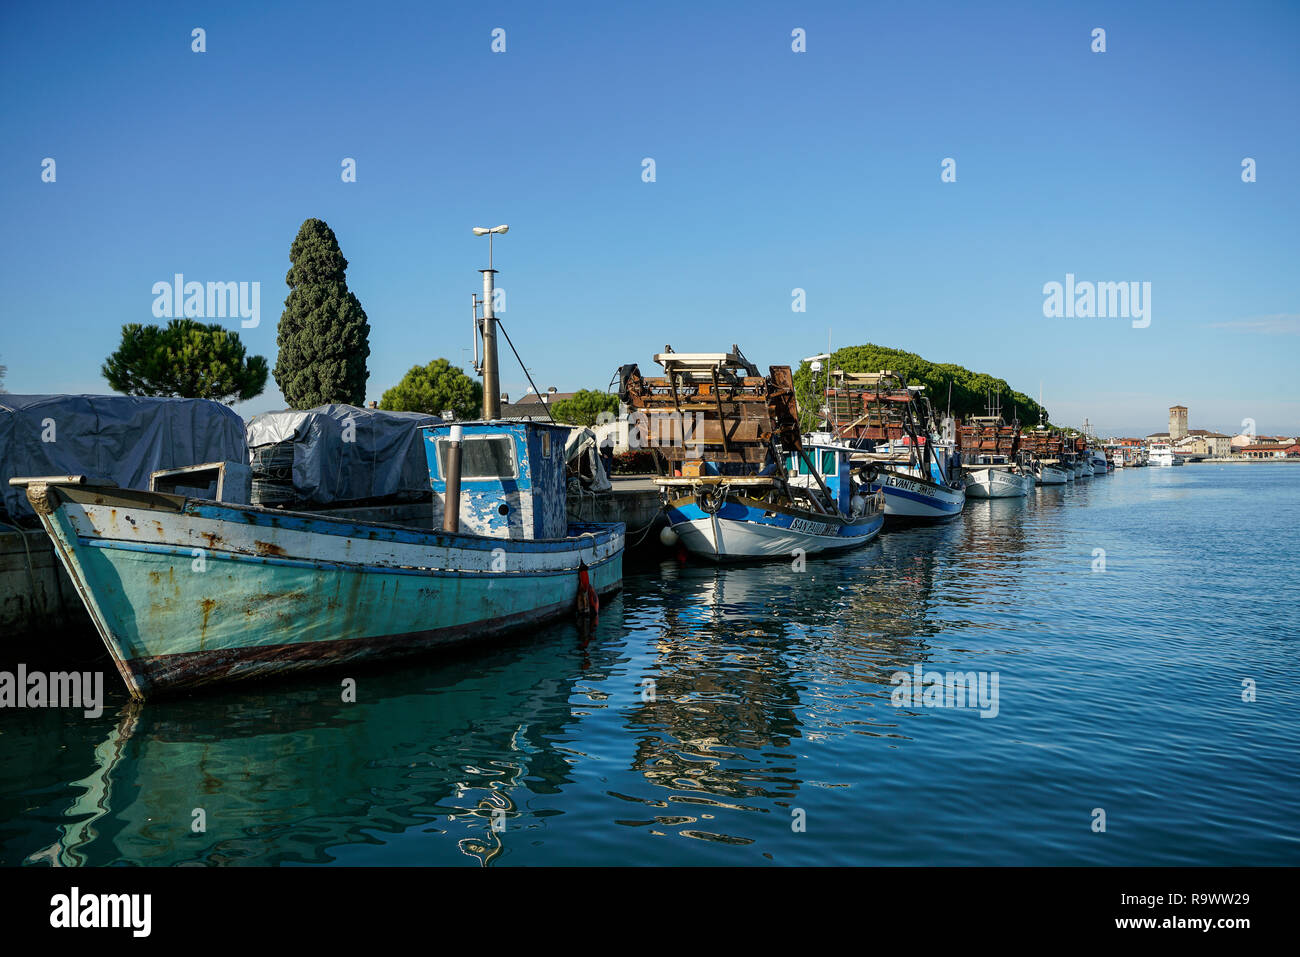 fishing boats on the quay of the port of Marano Lagunare, Friuli Venezia Giulia region, Italy Stock Photo